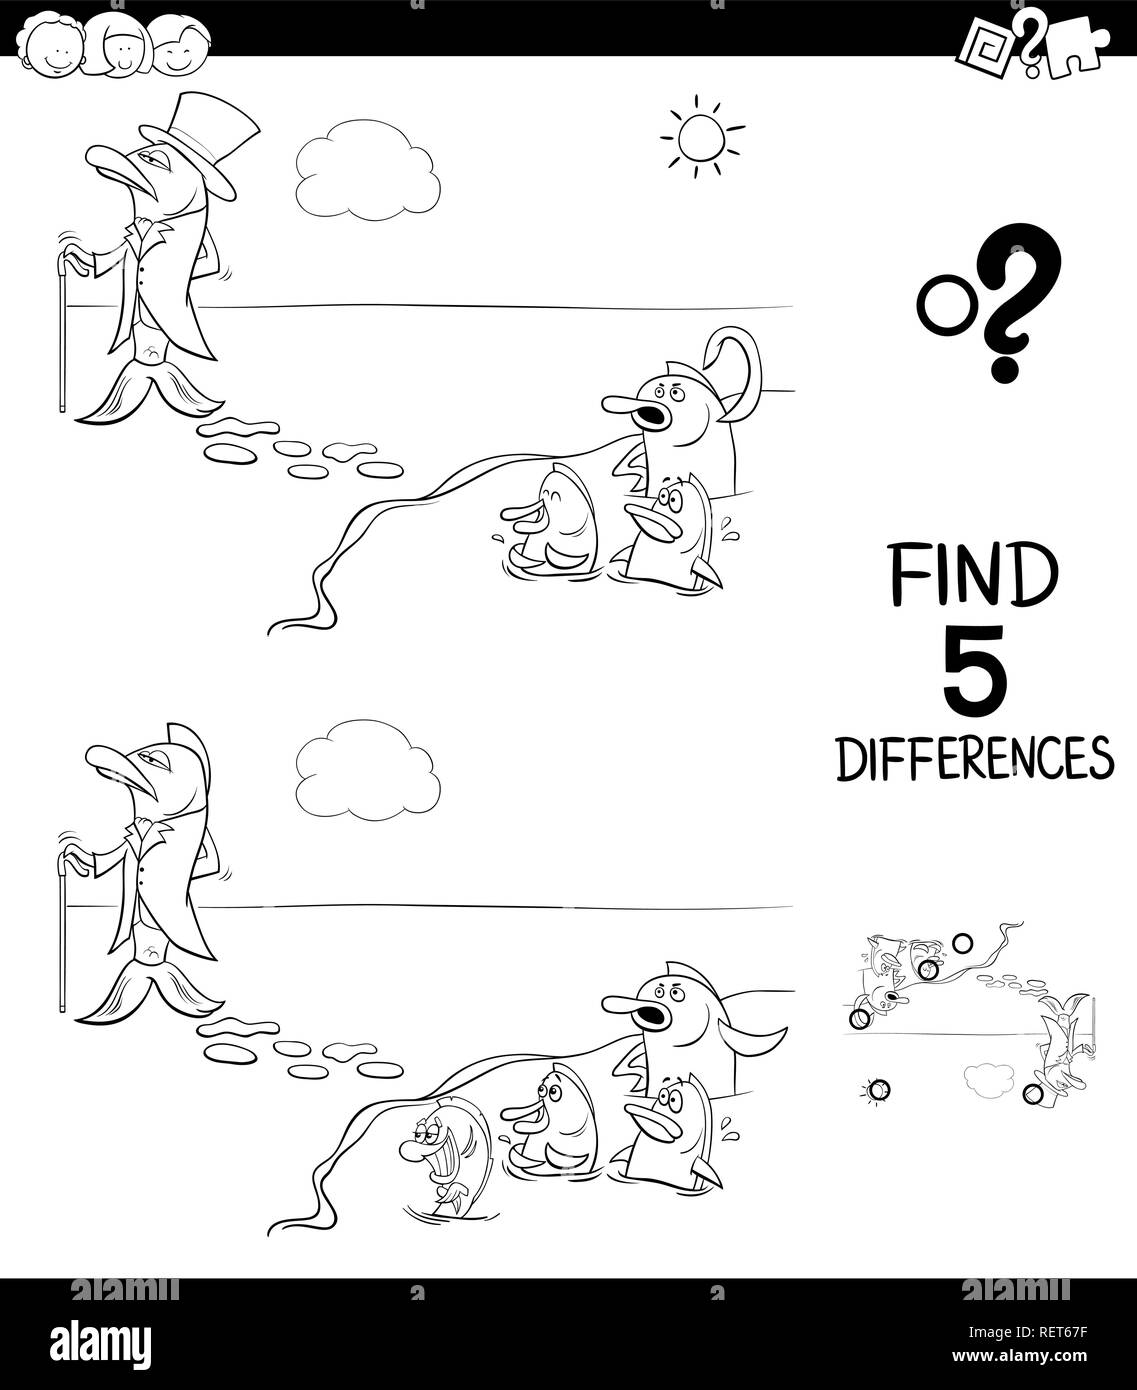 Illustration Cartoon noir et blanc de trouver cinq différences entre les photos, jeu éducatif pour enfants avec poisson hors de l'eau dit Coloring Illustration de Vecteur